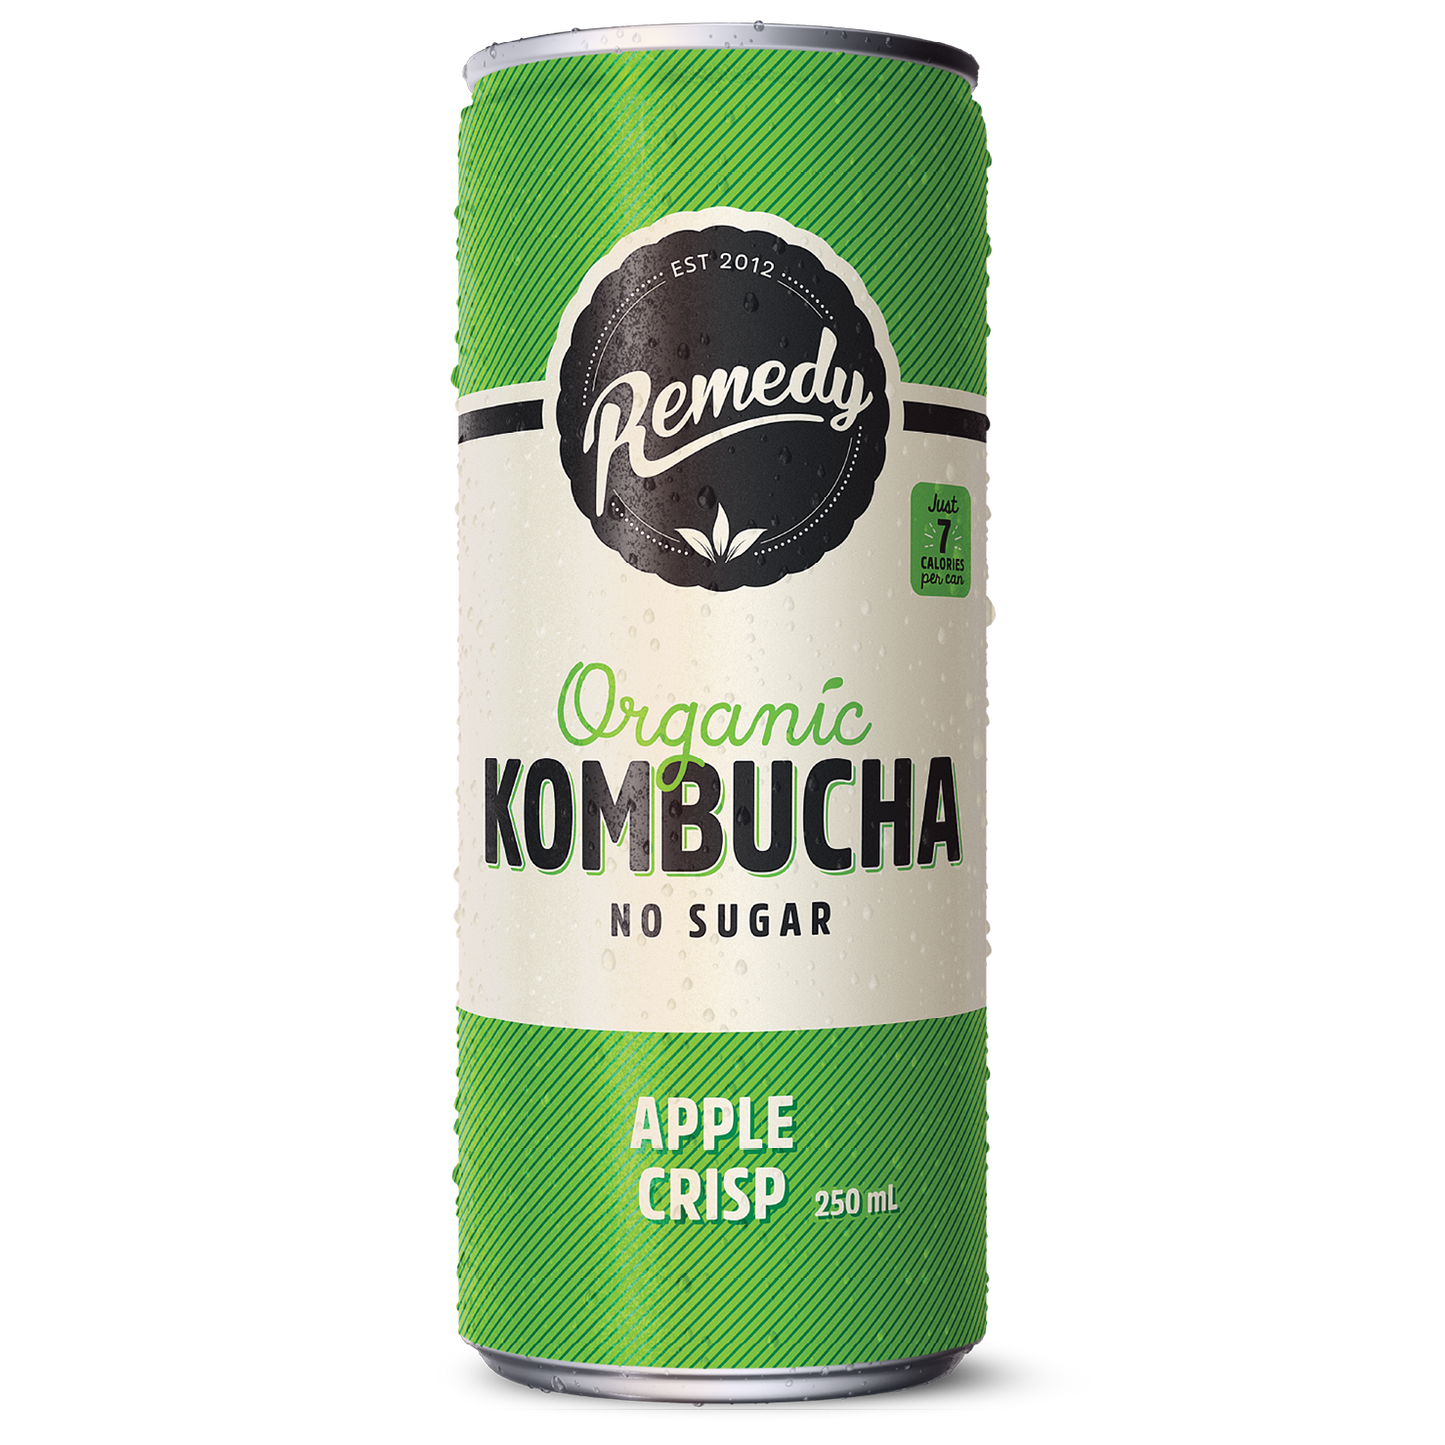 Remedy Kombucha Apple Crisp